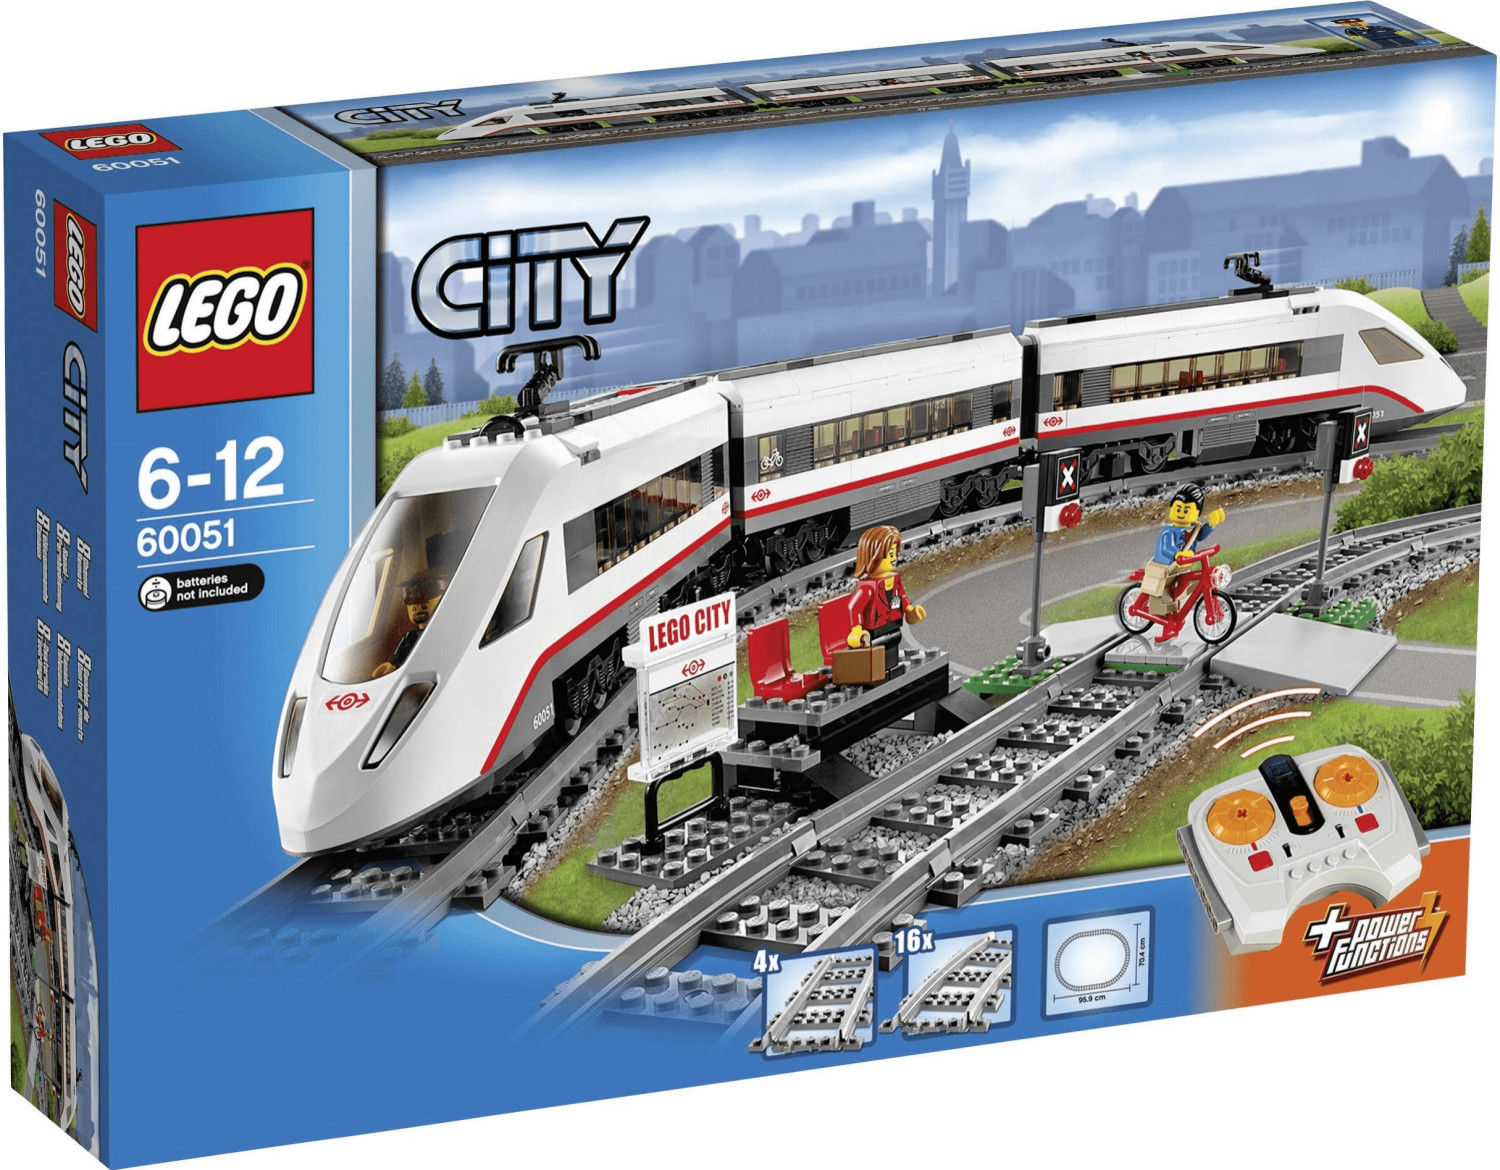 LEGO City 60197 pas cher, Le train de passagers télécommandé